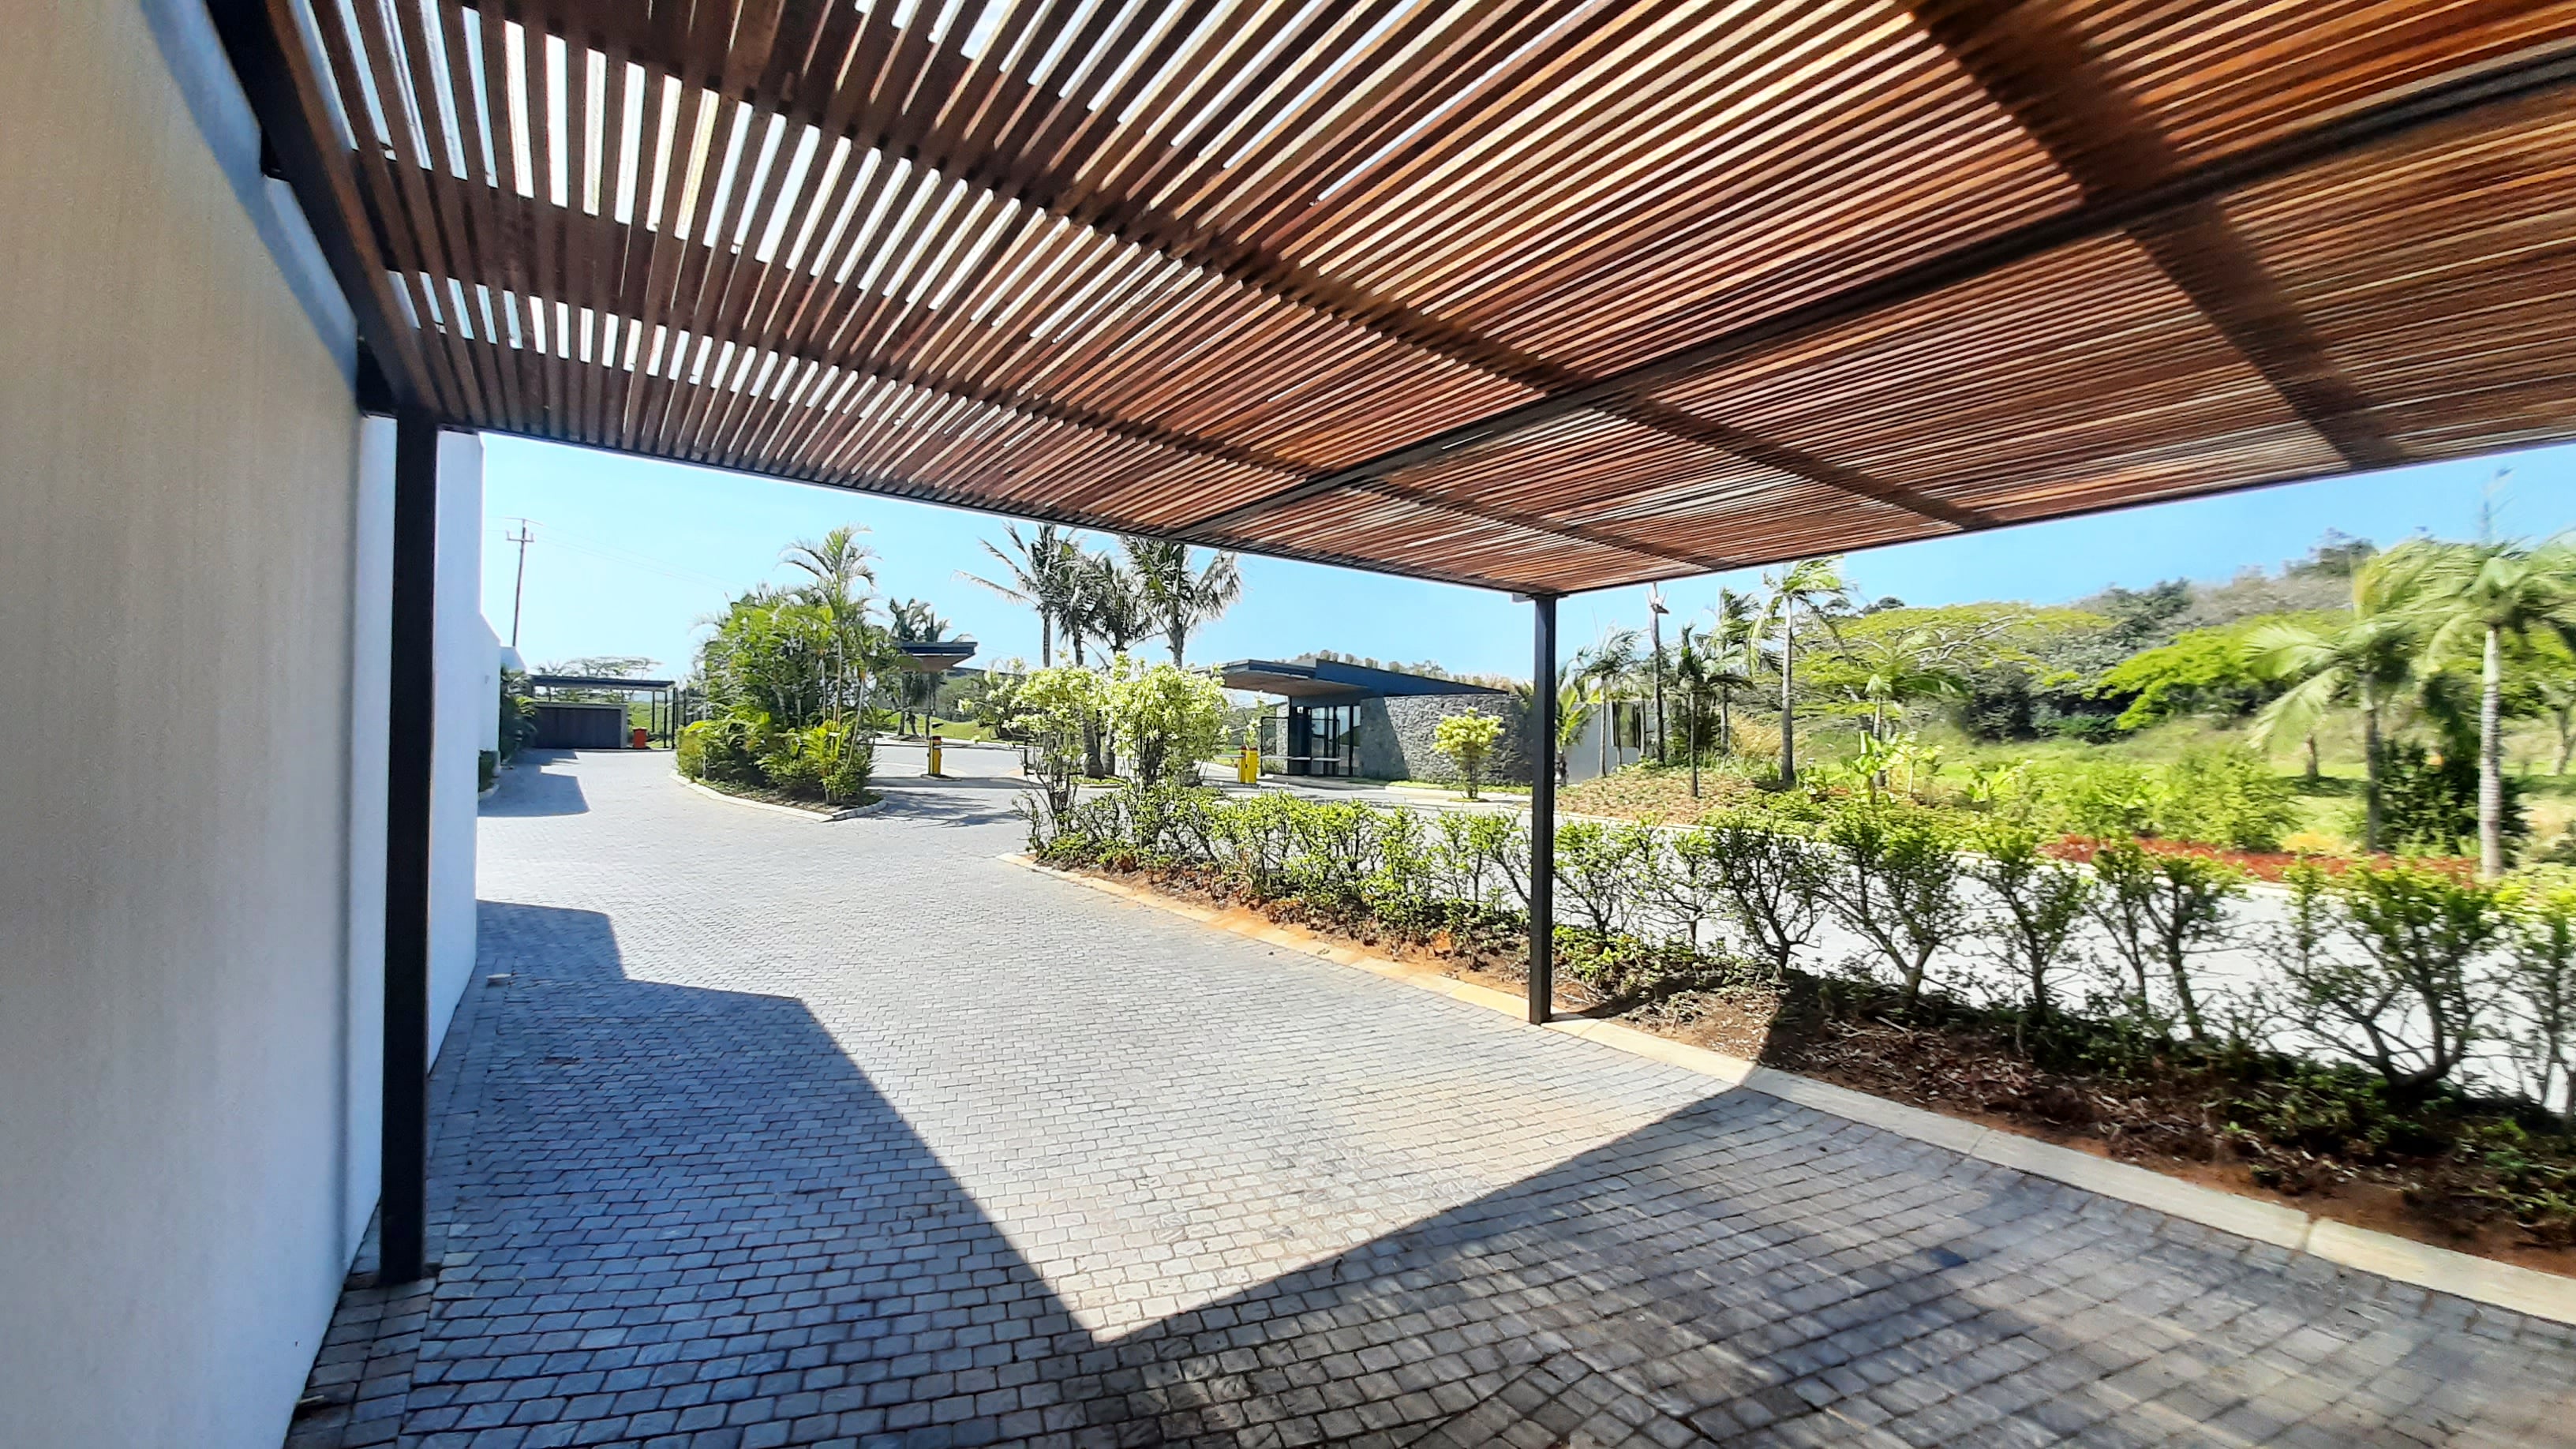 To Let 3 Bedroom Property for Rent in Elaleni Coastal Forest Estate KwaZulu-Natal